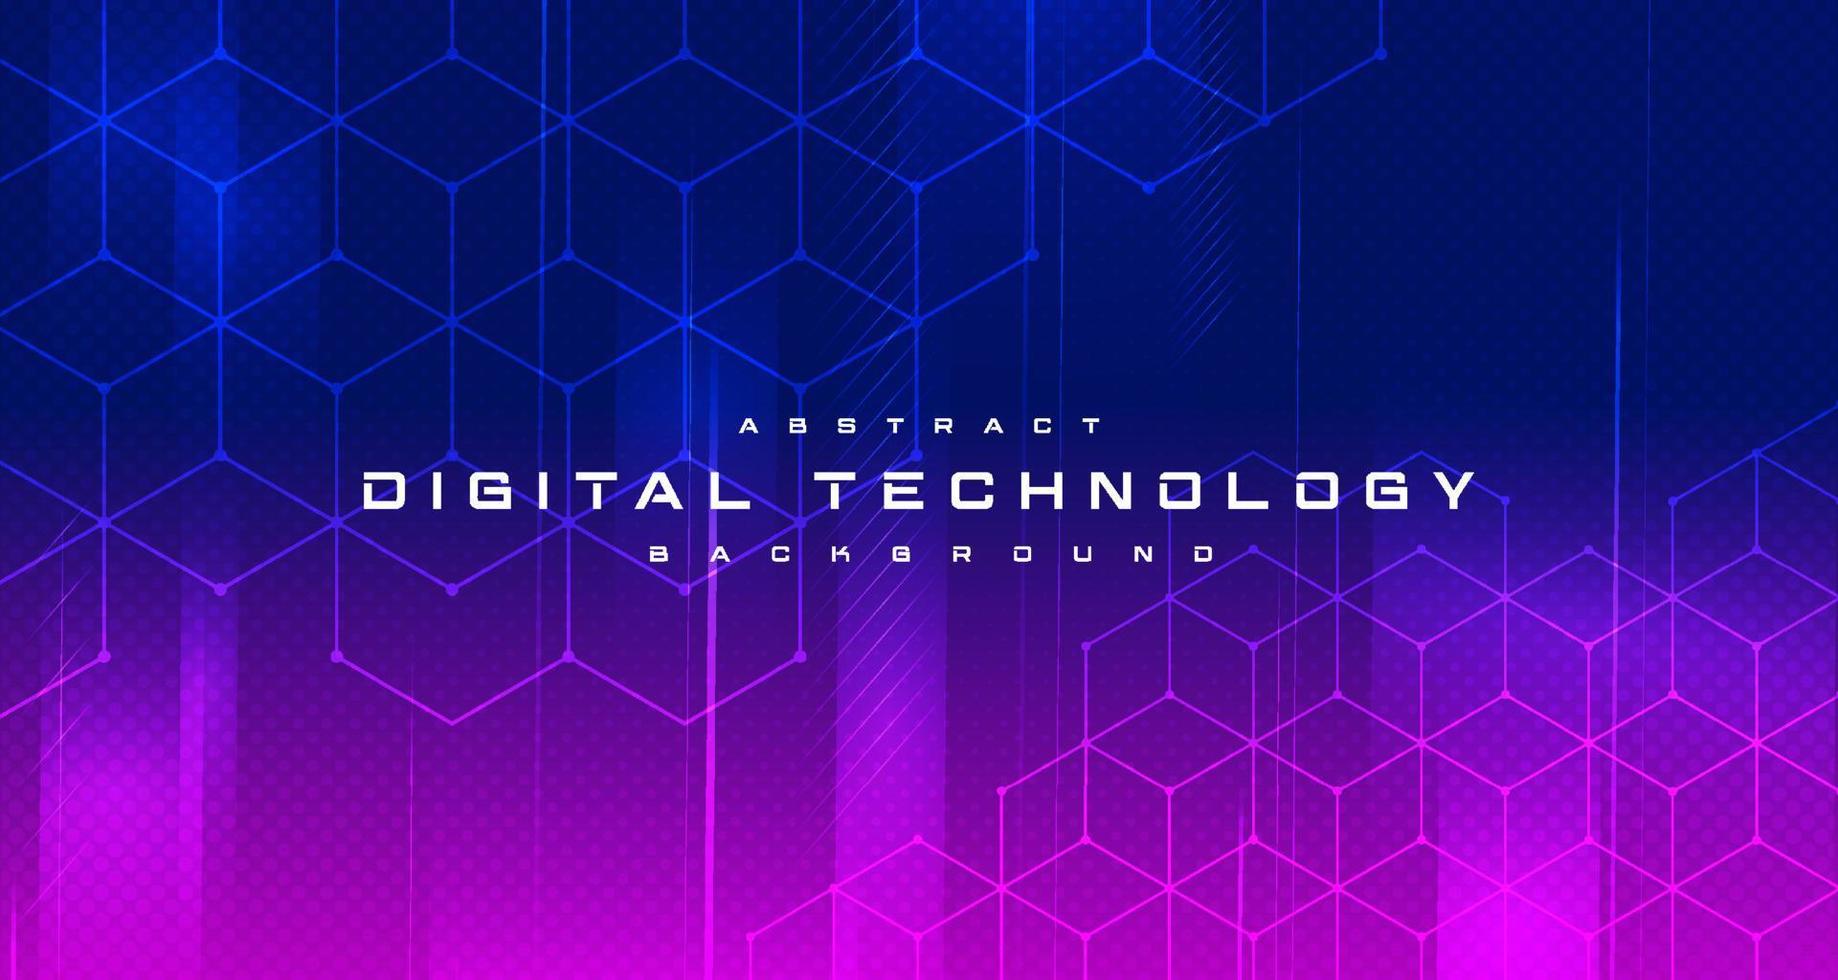 digitales technologiebanner blau-rosa hintergrundkonzept, cyber-technologie-lichteffekt, abstrakte technologie, innovative zukünftige daten, internet-netzwerk, ai big data, linien punktverbindung, illustrationsvektor vektor